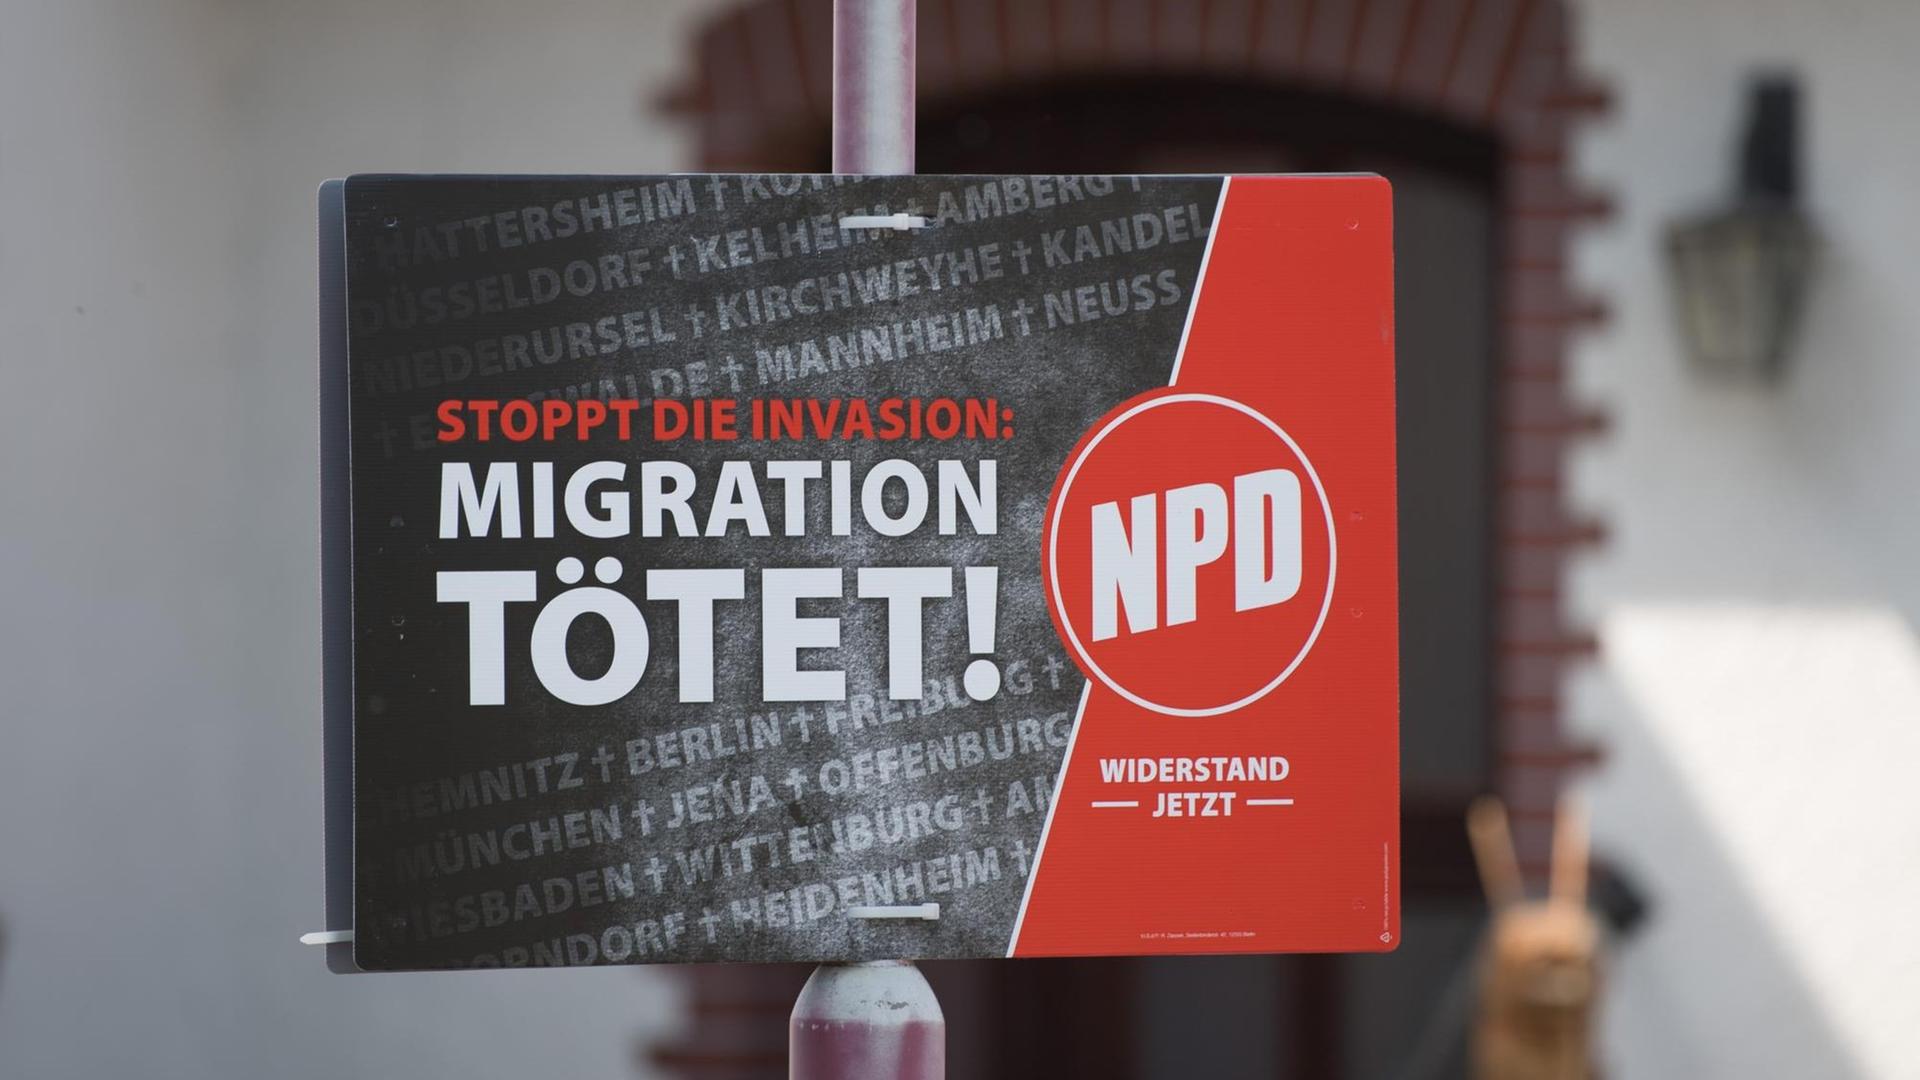 Ein Wahlplakat der rechtsextremen Nationaldemokratischen Partei Deutschlands (NPD) mit der Aufschrift "Migration Tötet" hängt an einem Lampenpfahl.